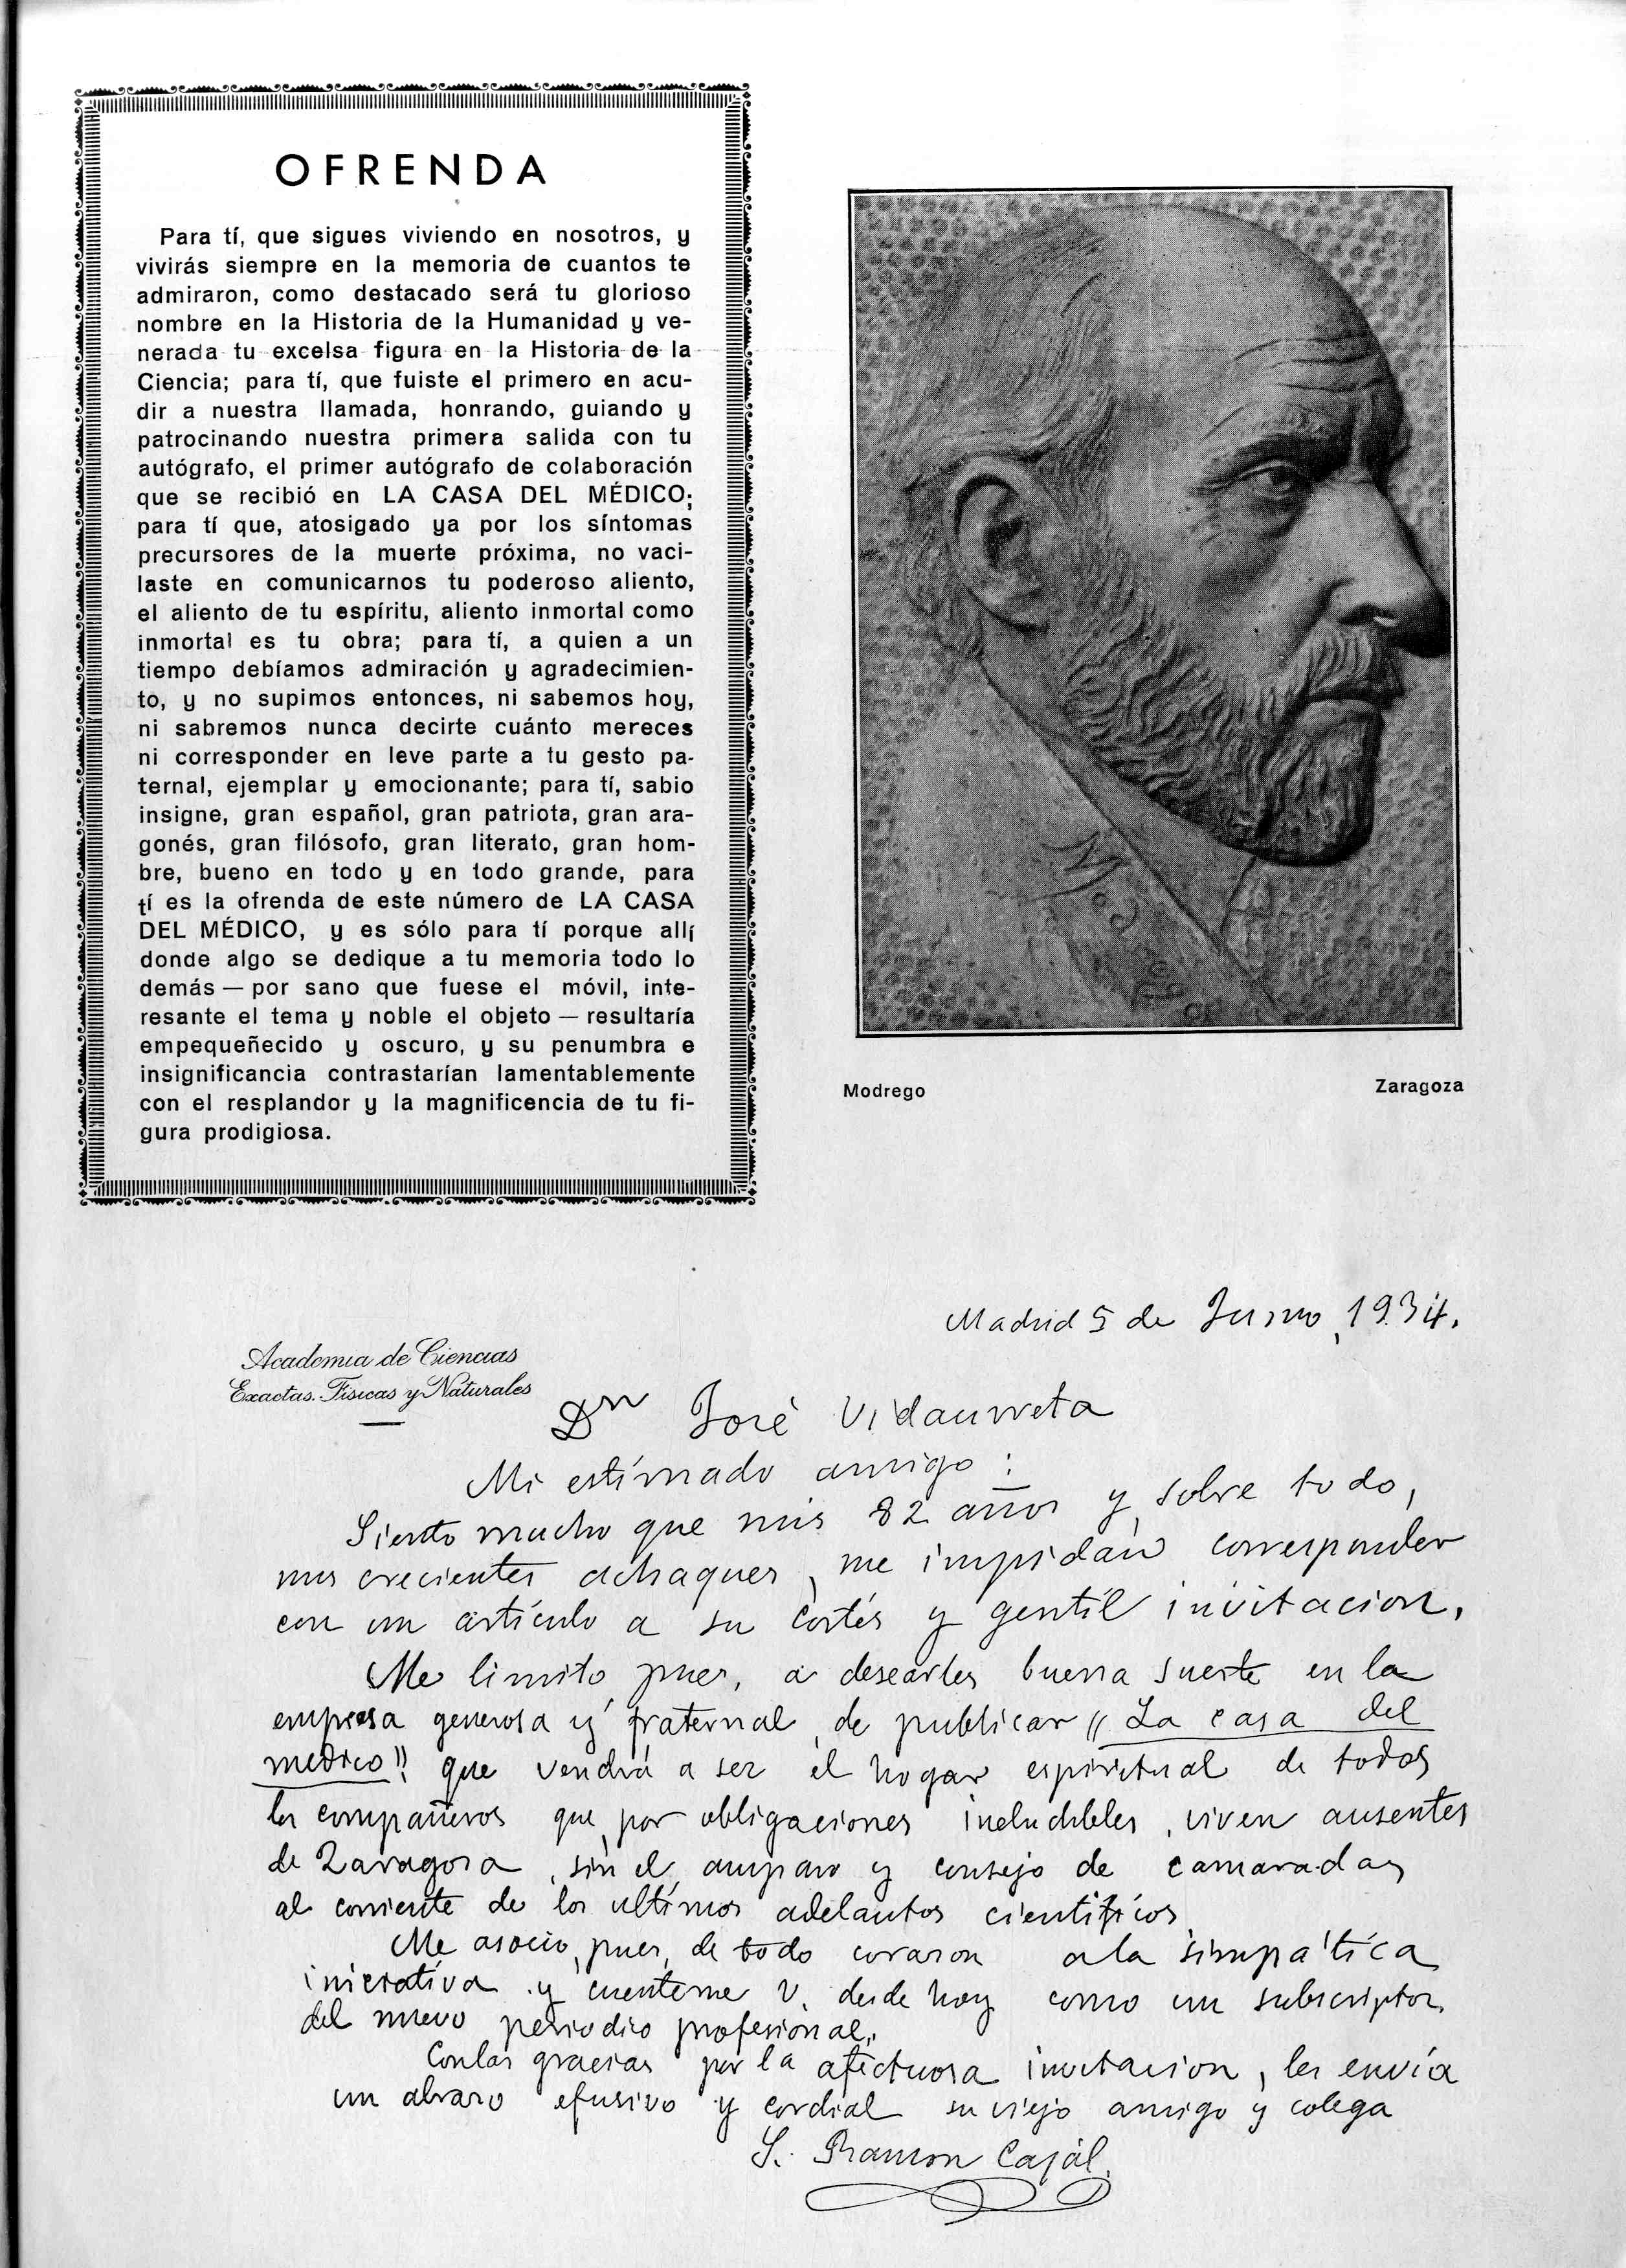 Foto y dedicatoria manuscrita por Ramón y Cajal